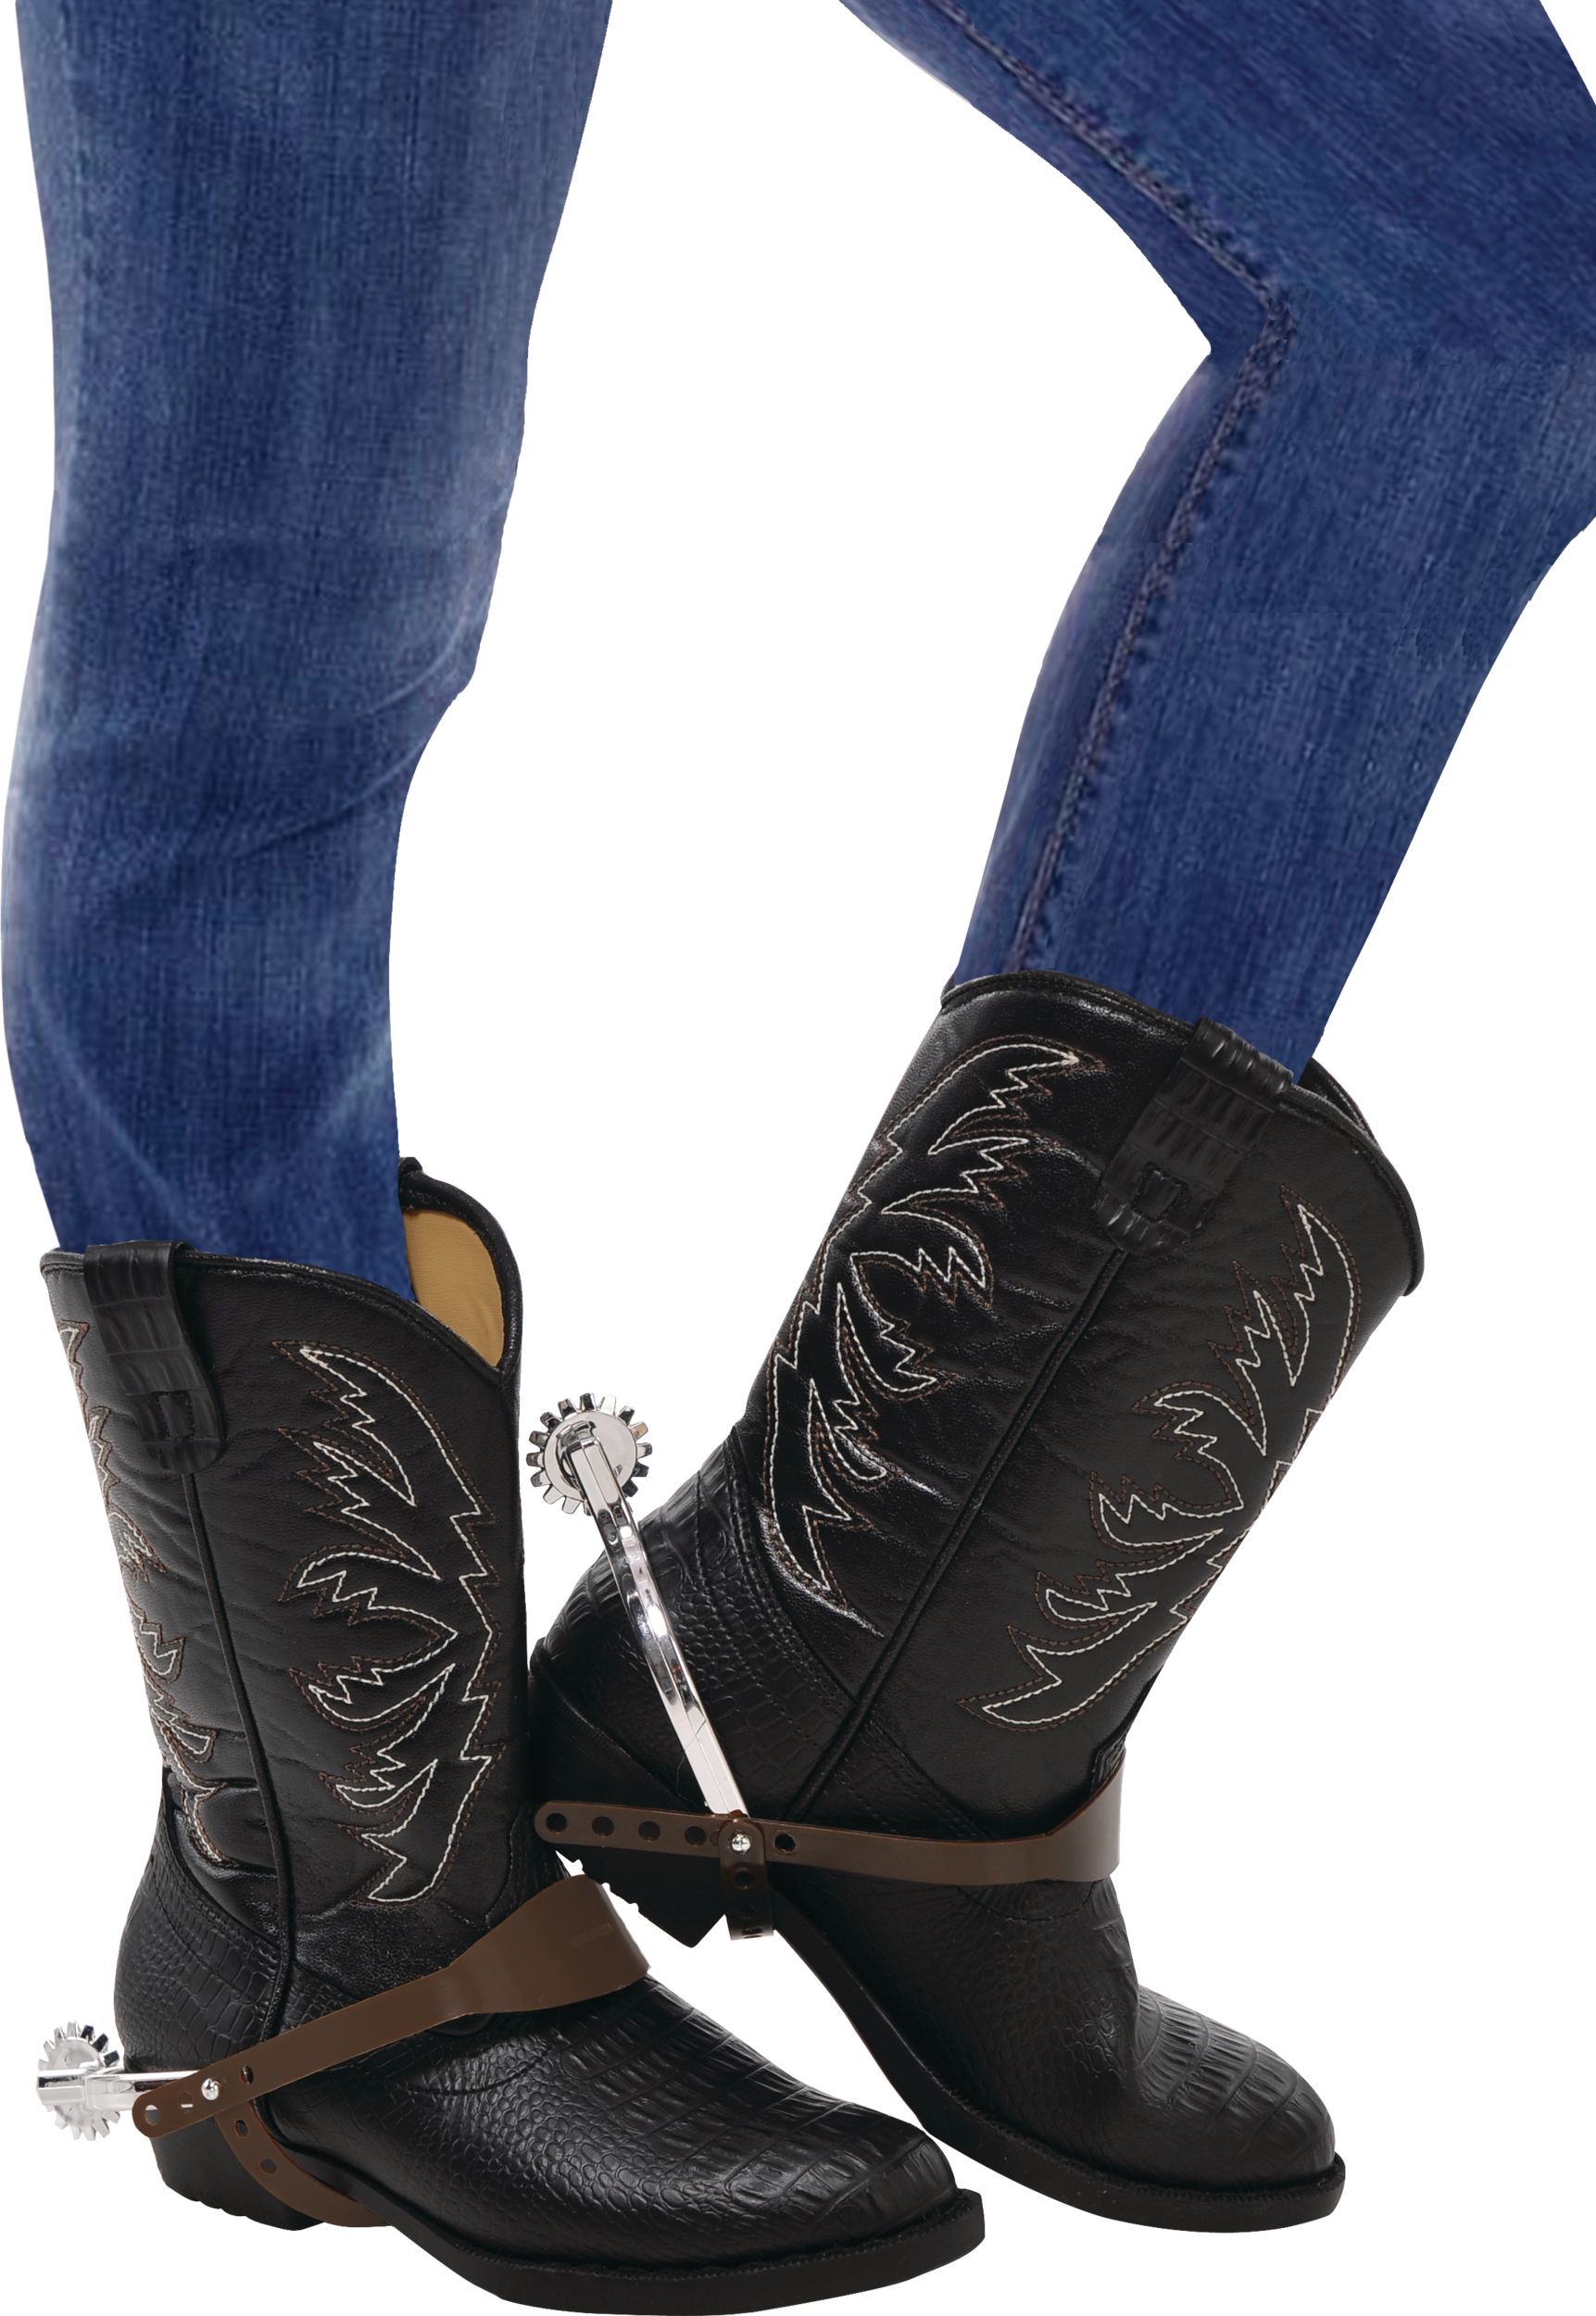 Bottes de cowboy western avec éperons pour adulte, argenté, taille unique,  paq. 2, accessoires de costume à porter pour l'Halloween